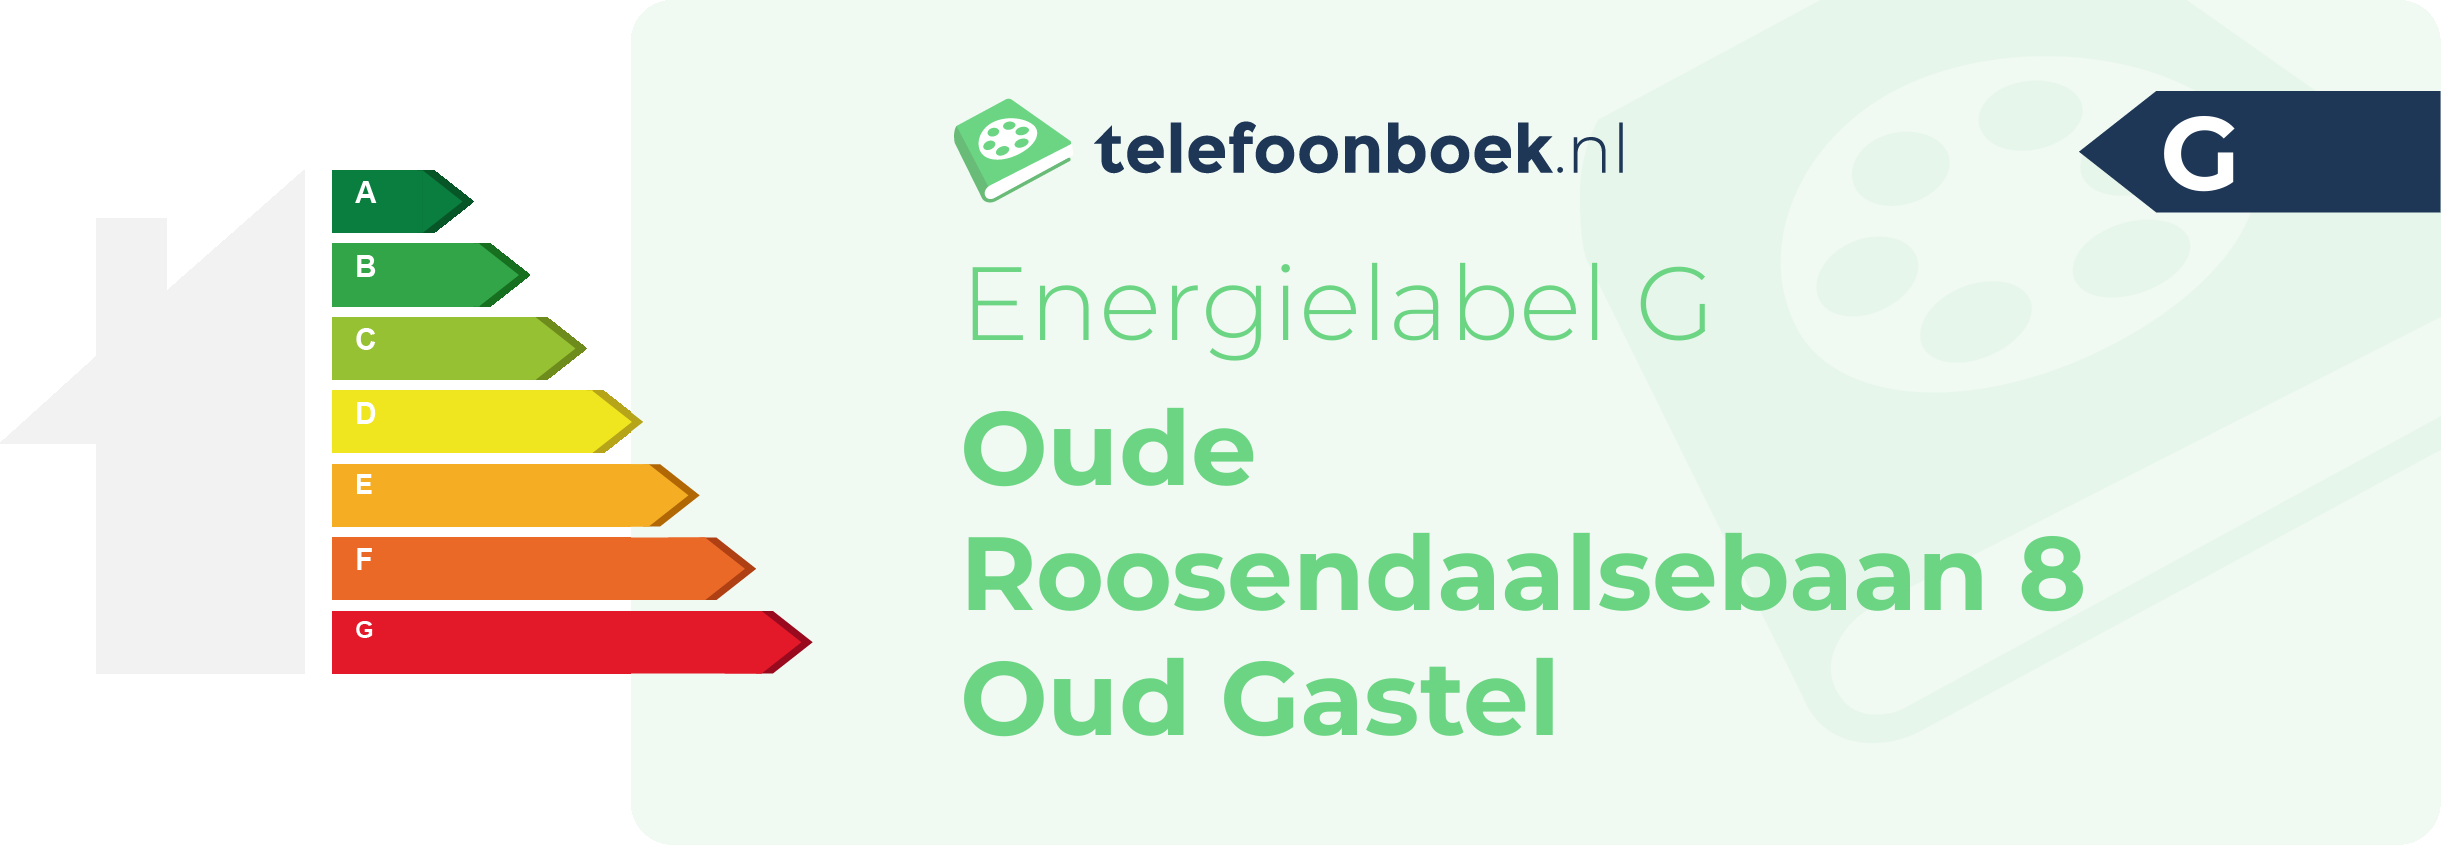 Energielabel Oude Roosendaalsebaan 8 Oud Gastel